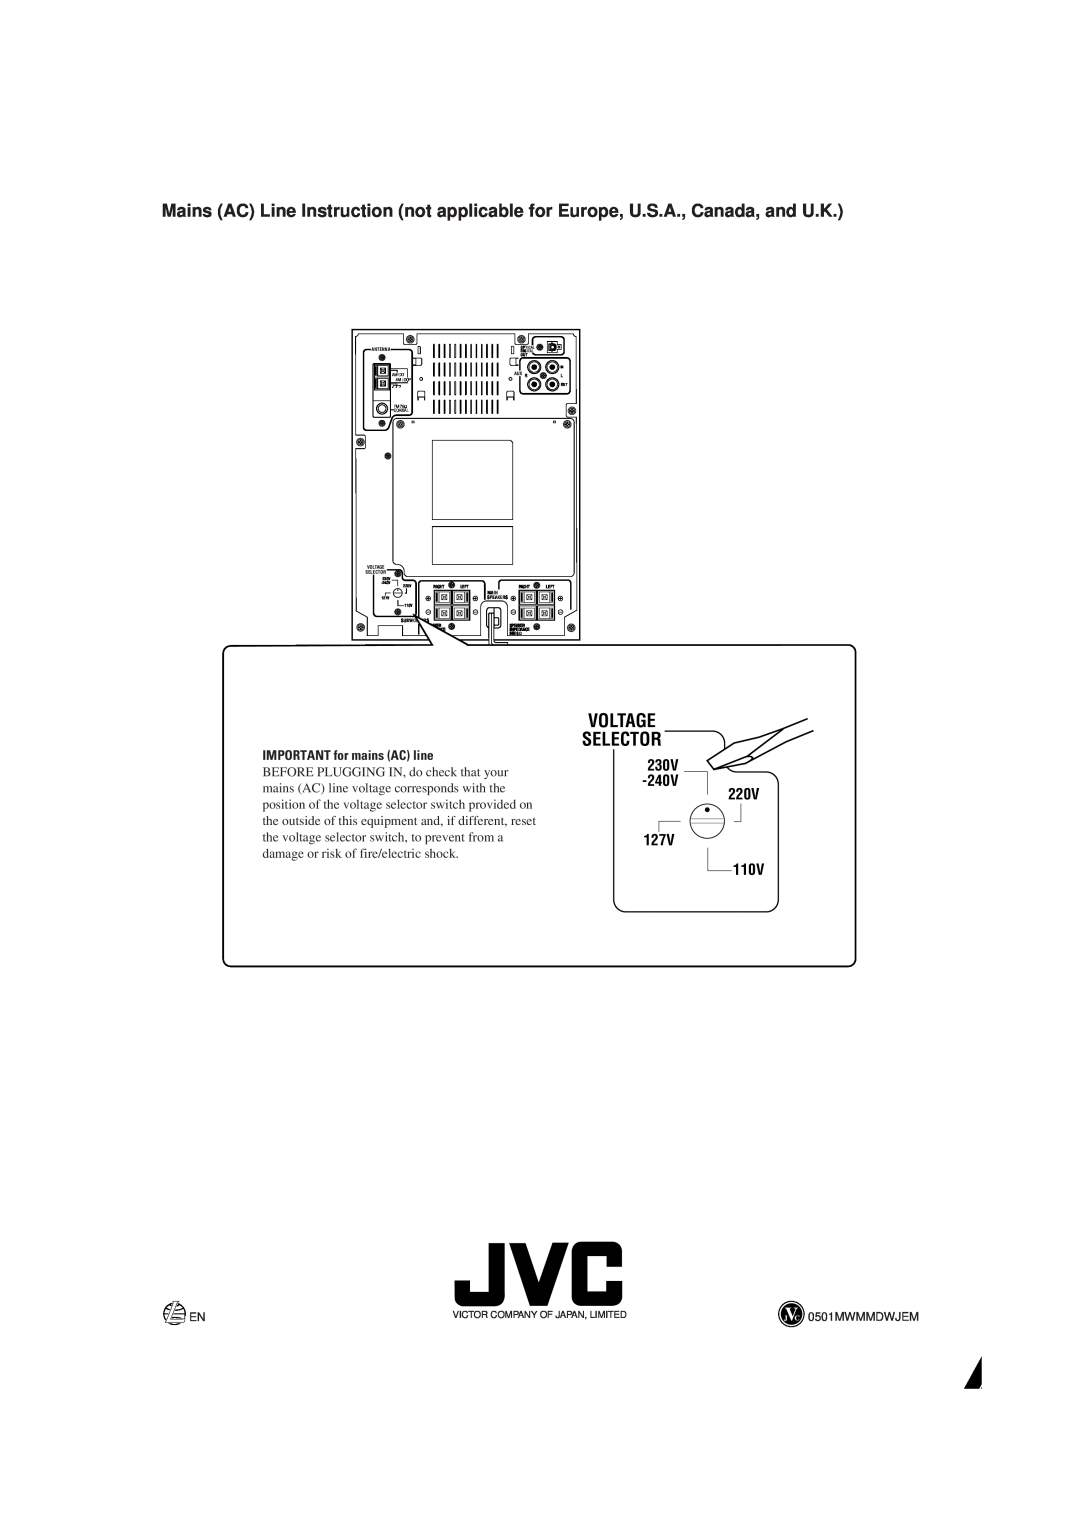 JVC UX-P7 manual Voltage Selector, 127V, 220V, IMPORTANT for mains AC line, 230V 